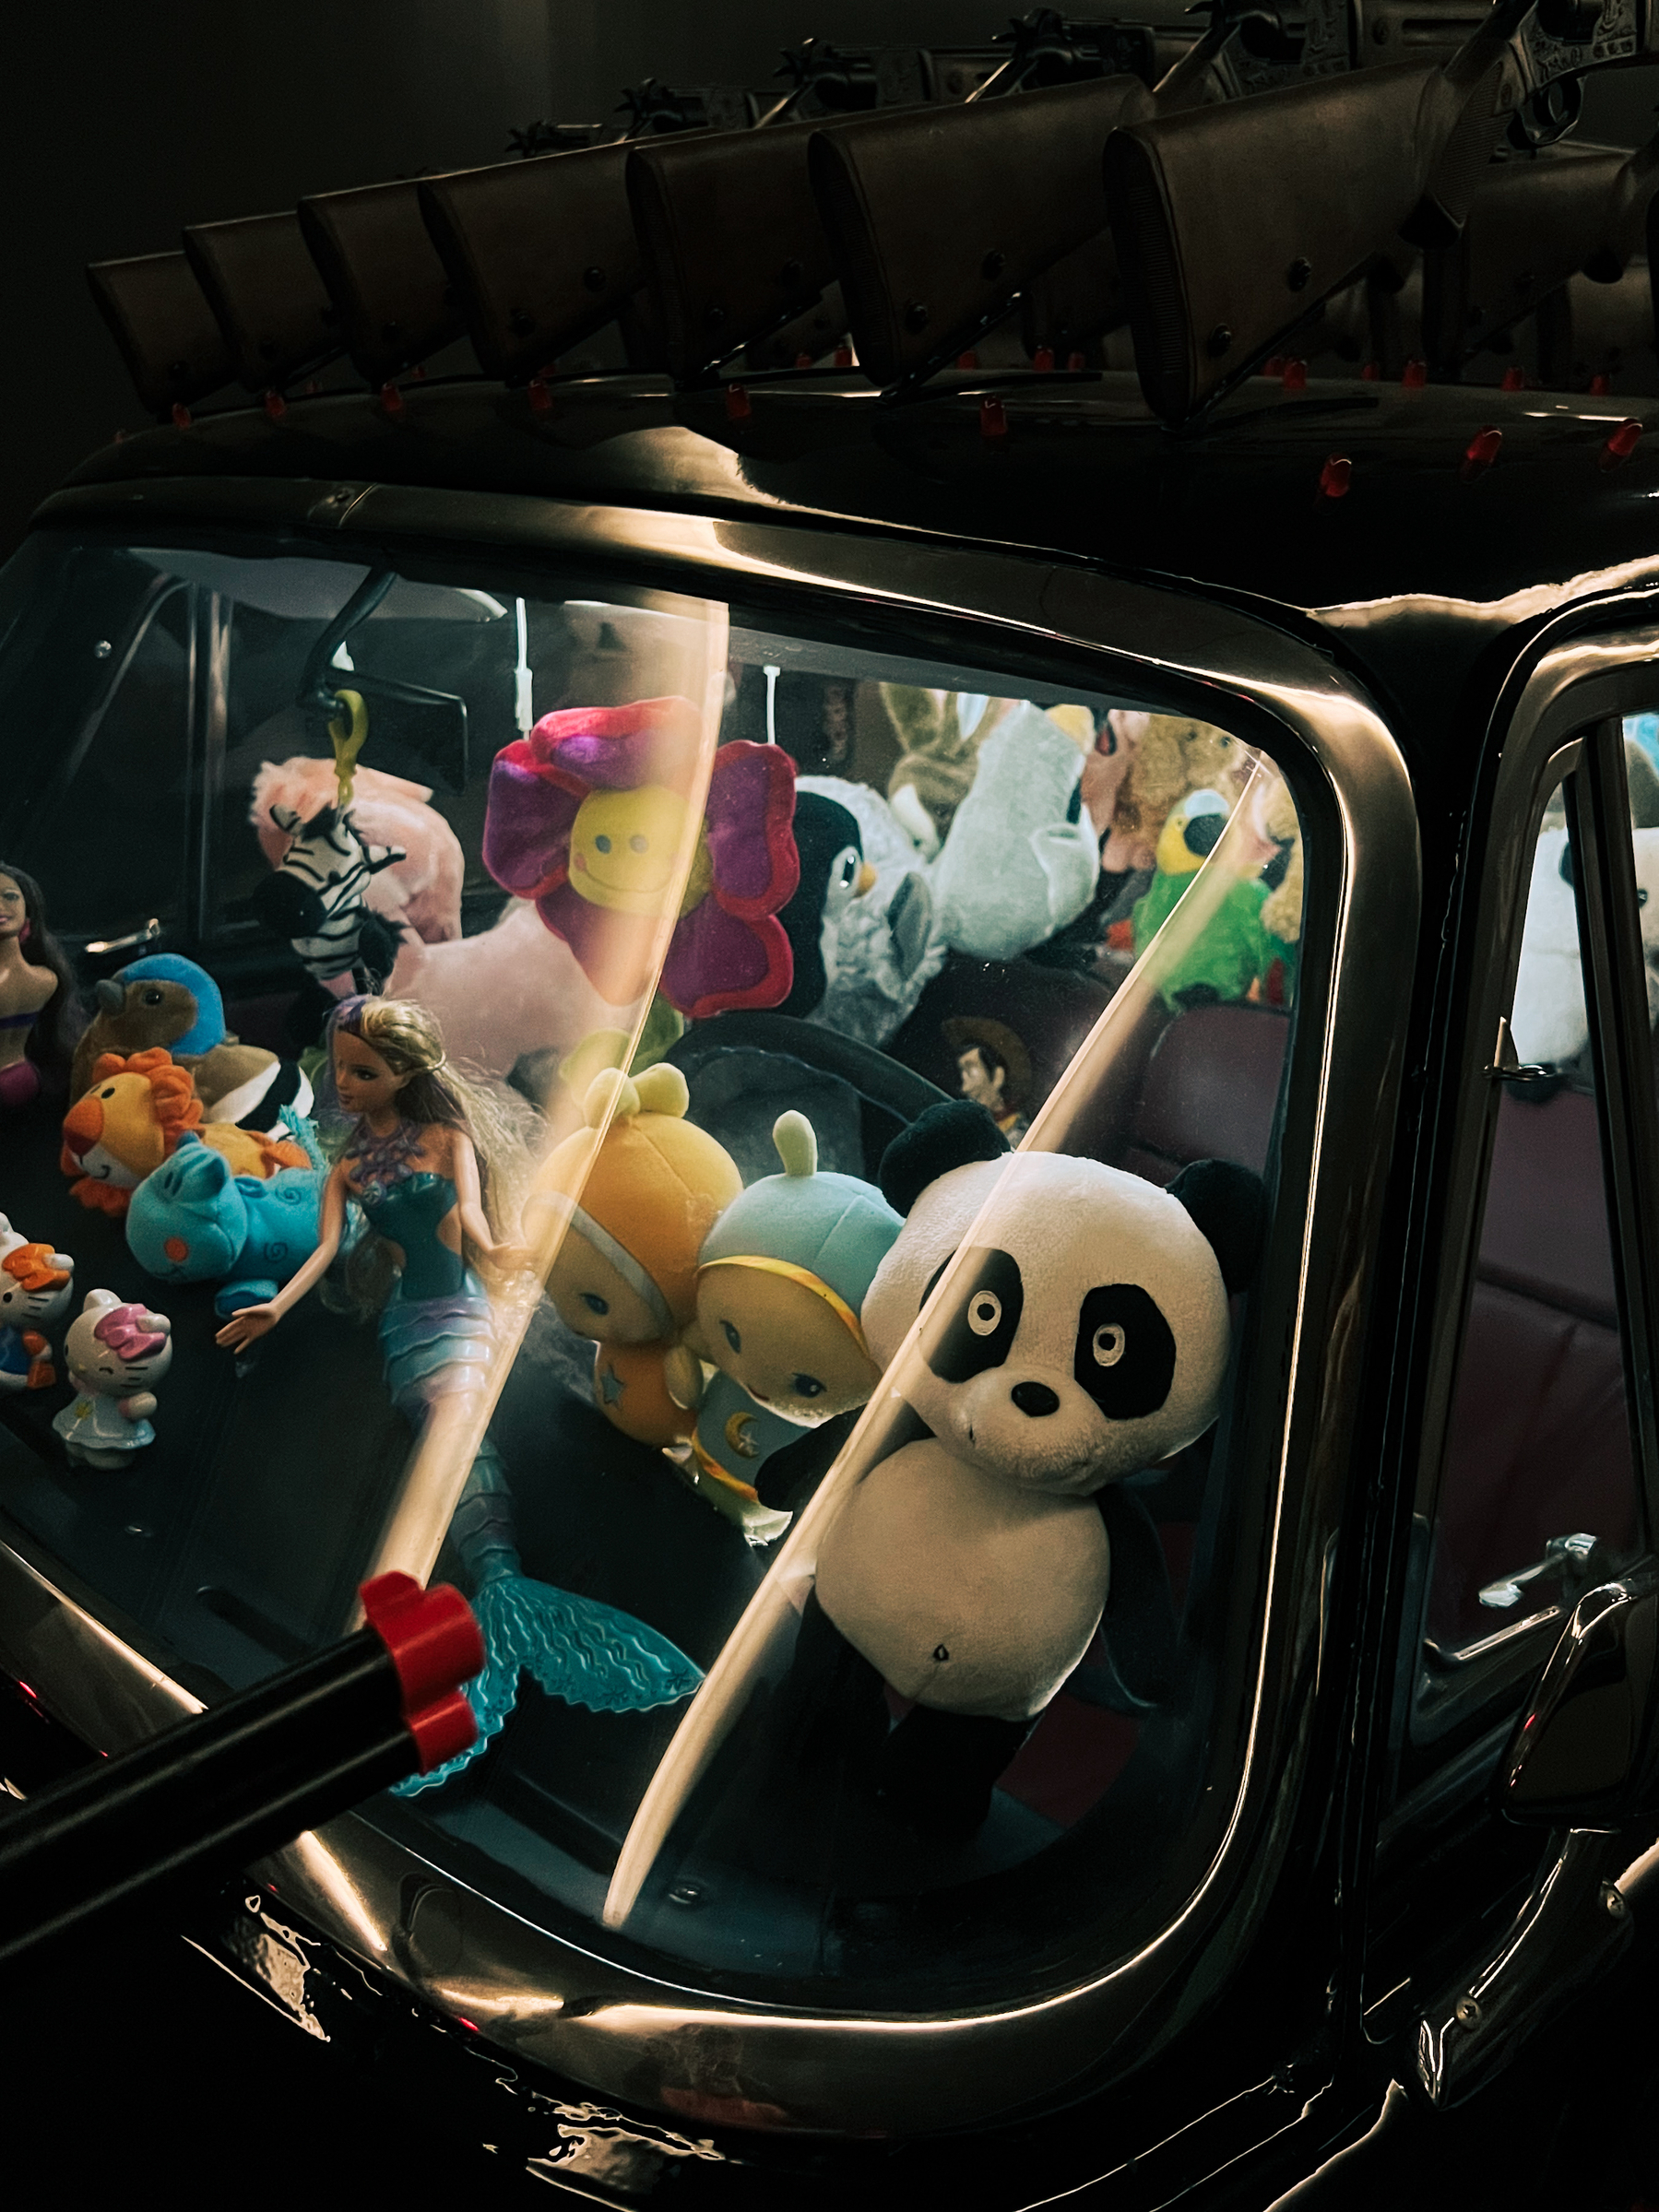 Art work by Joana Vasconcelos. Plush toys inside a car. 